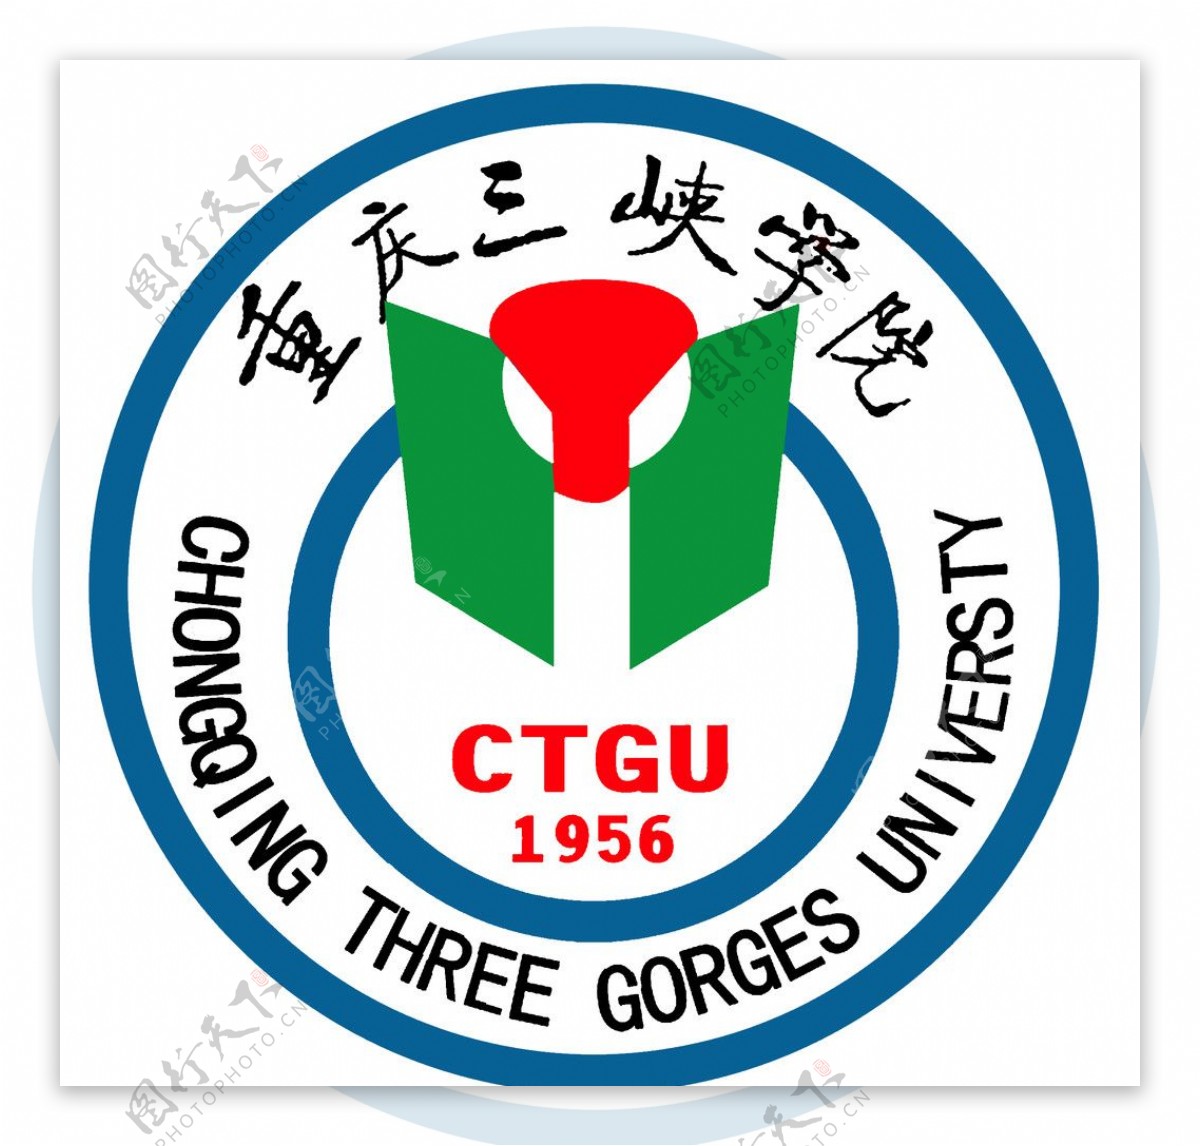 重庆三峡学院校徽图片